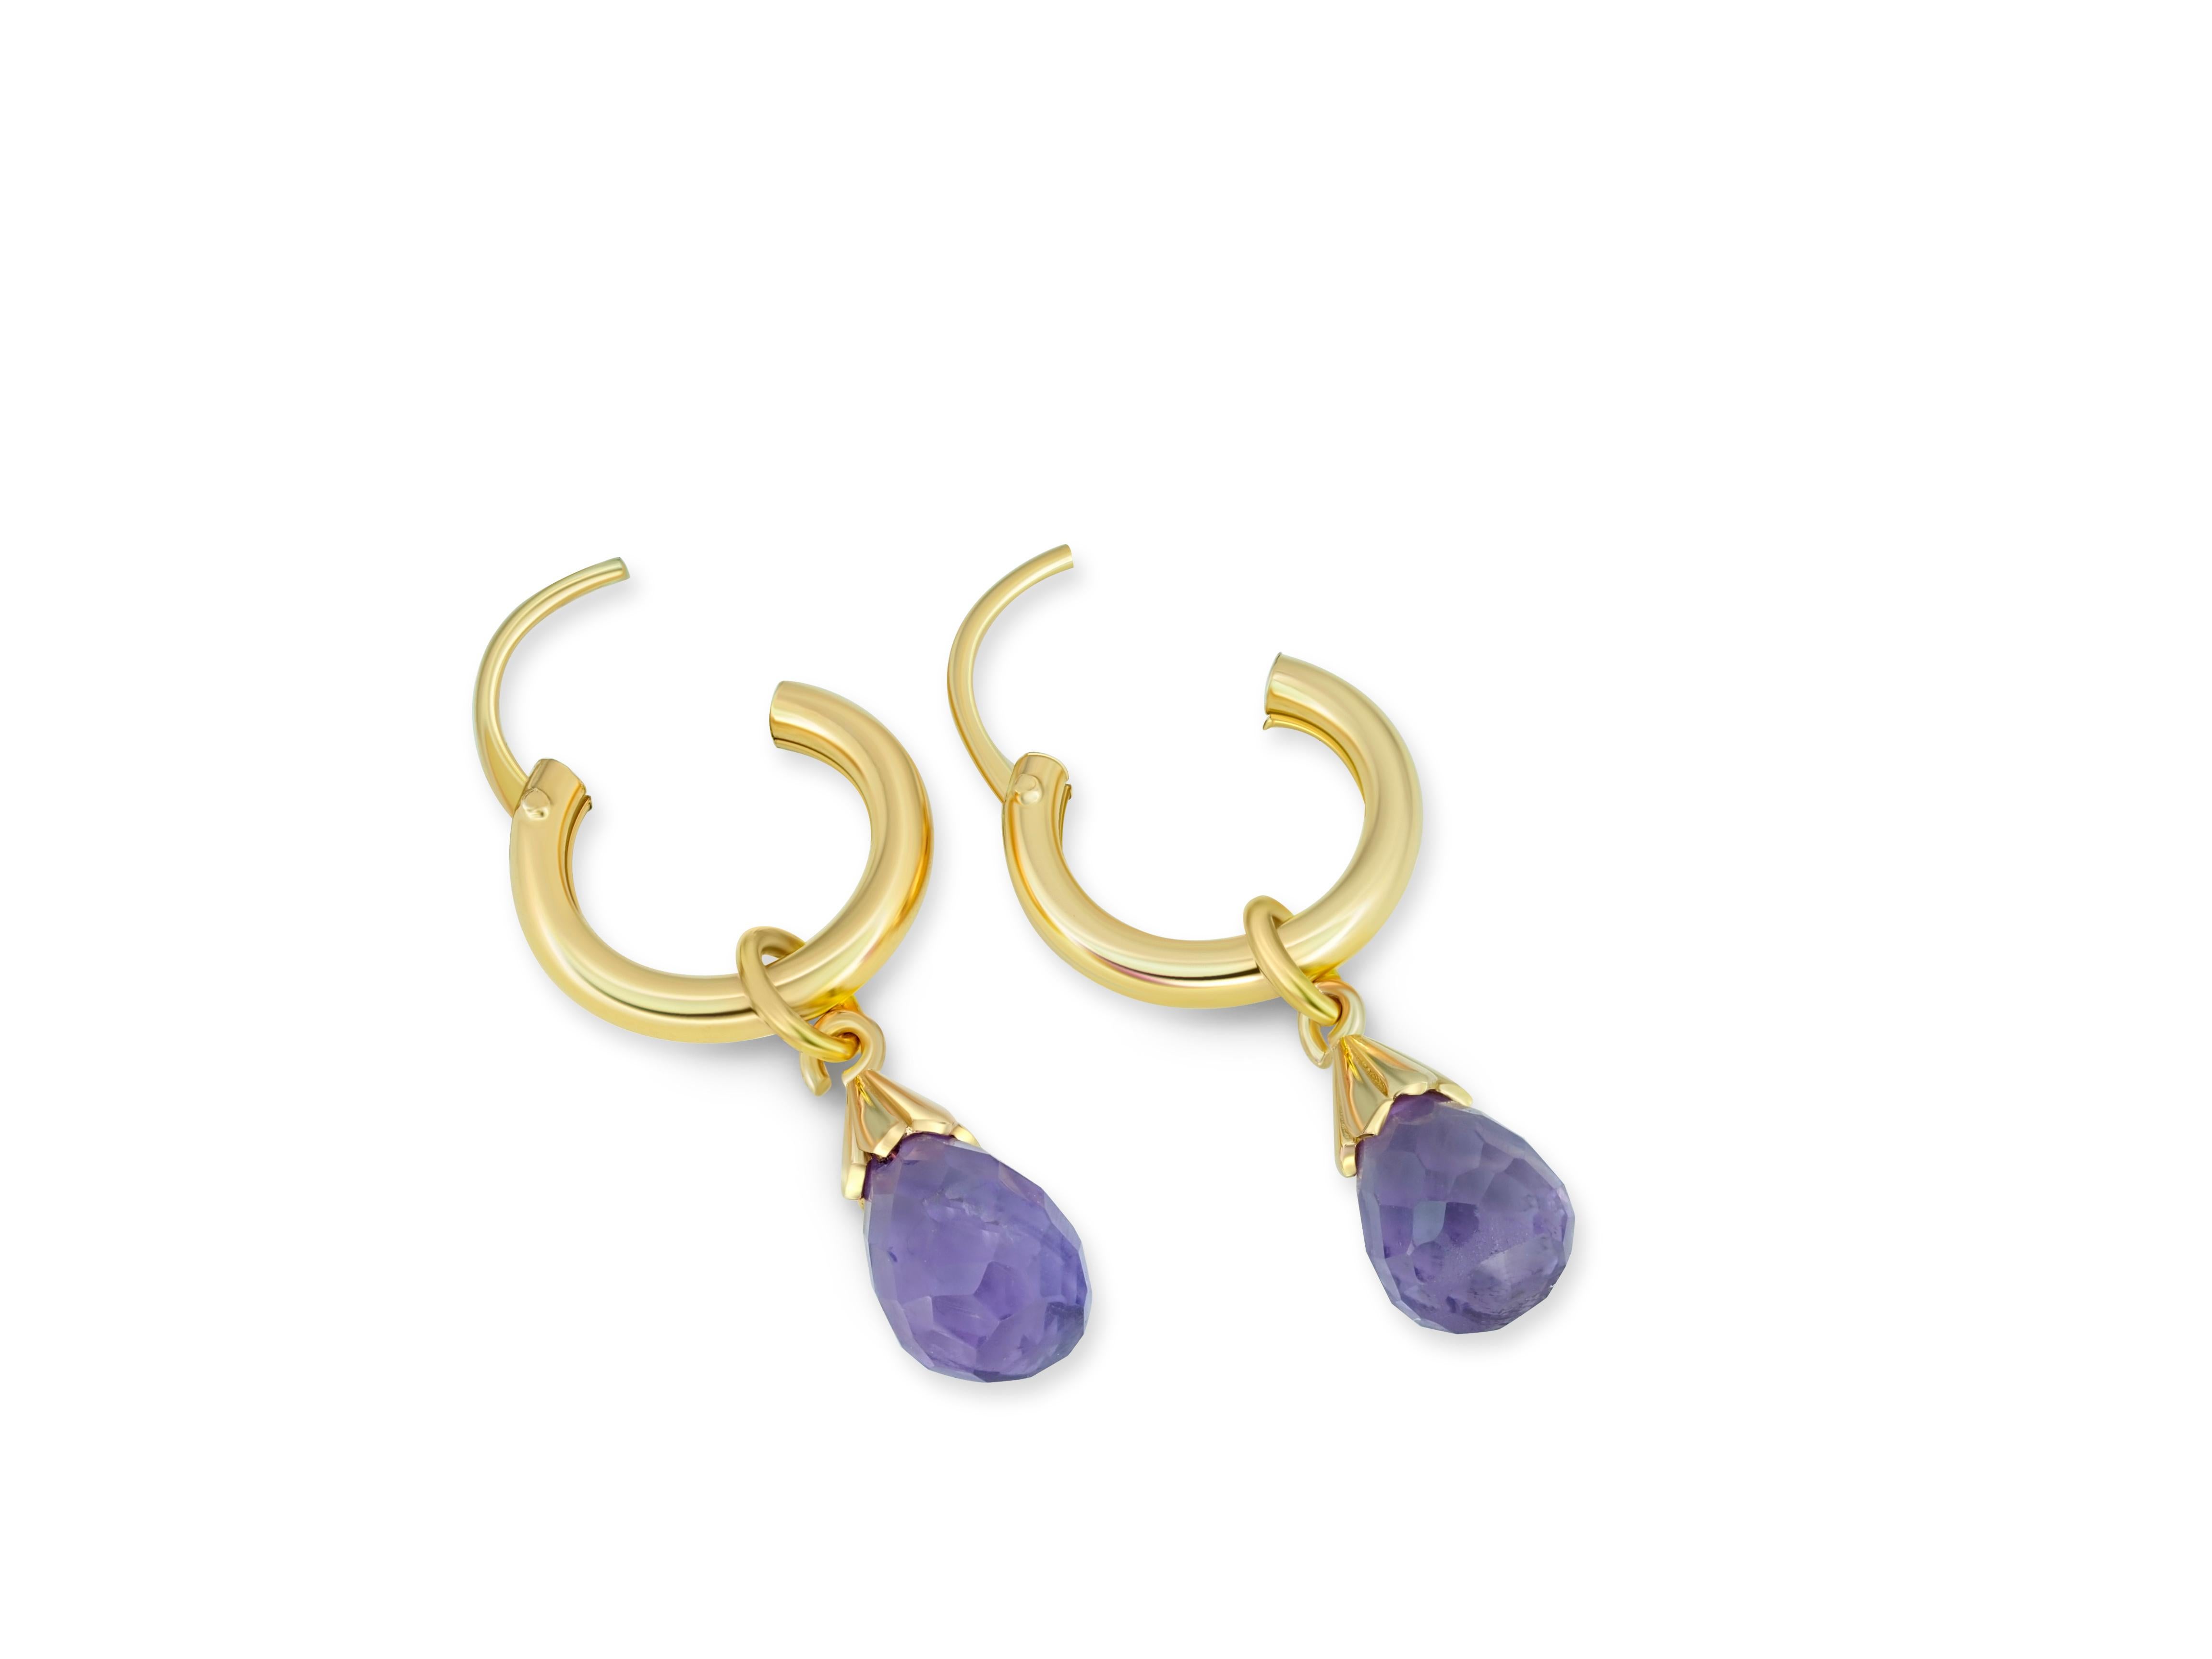 Briolette Cut Amethyst huggy hoop earrings.  For Sale